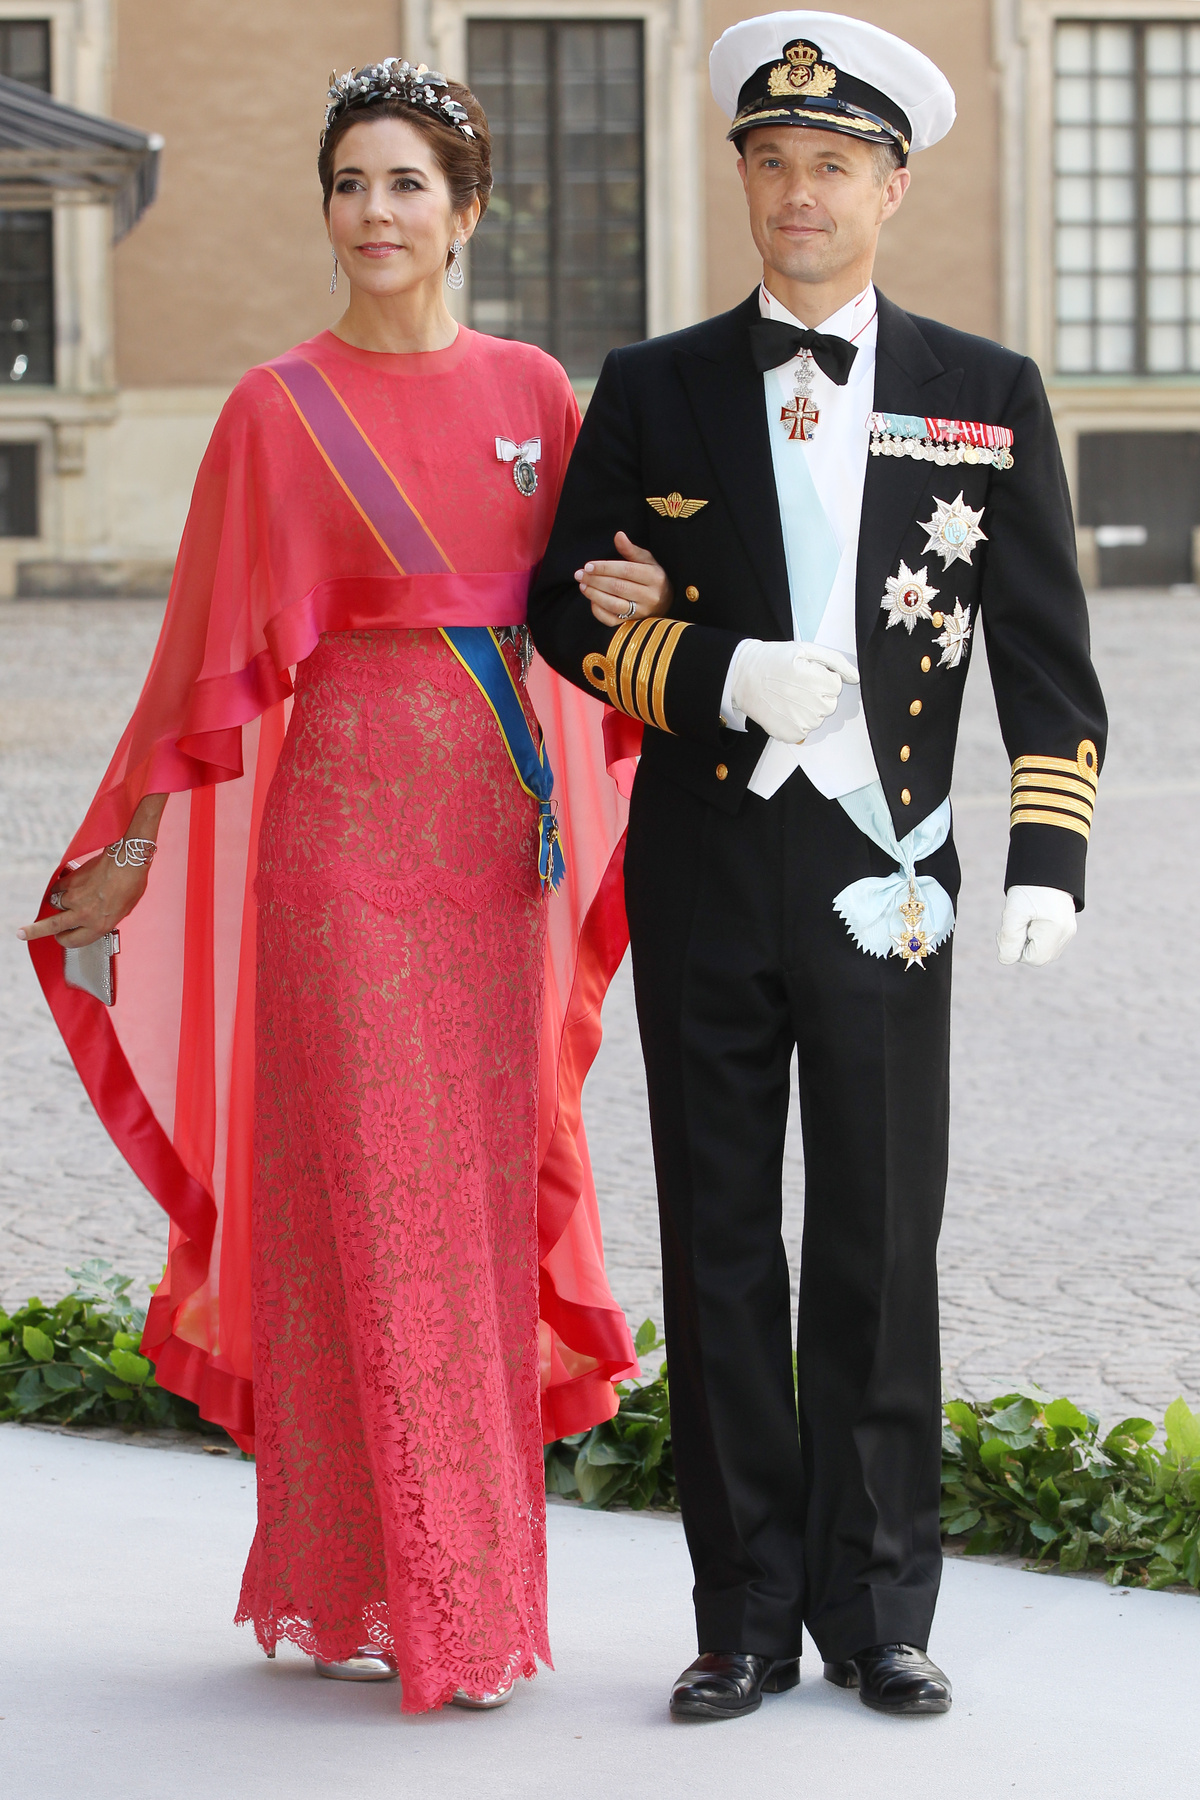 Mária hercegnő 2004-ben Koppenhágában ment hozzá Frigyes dán trónörököshöz. A pár a 2000-es Sydney-i olimpián botlott egymásba.

